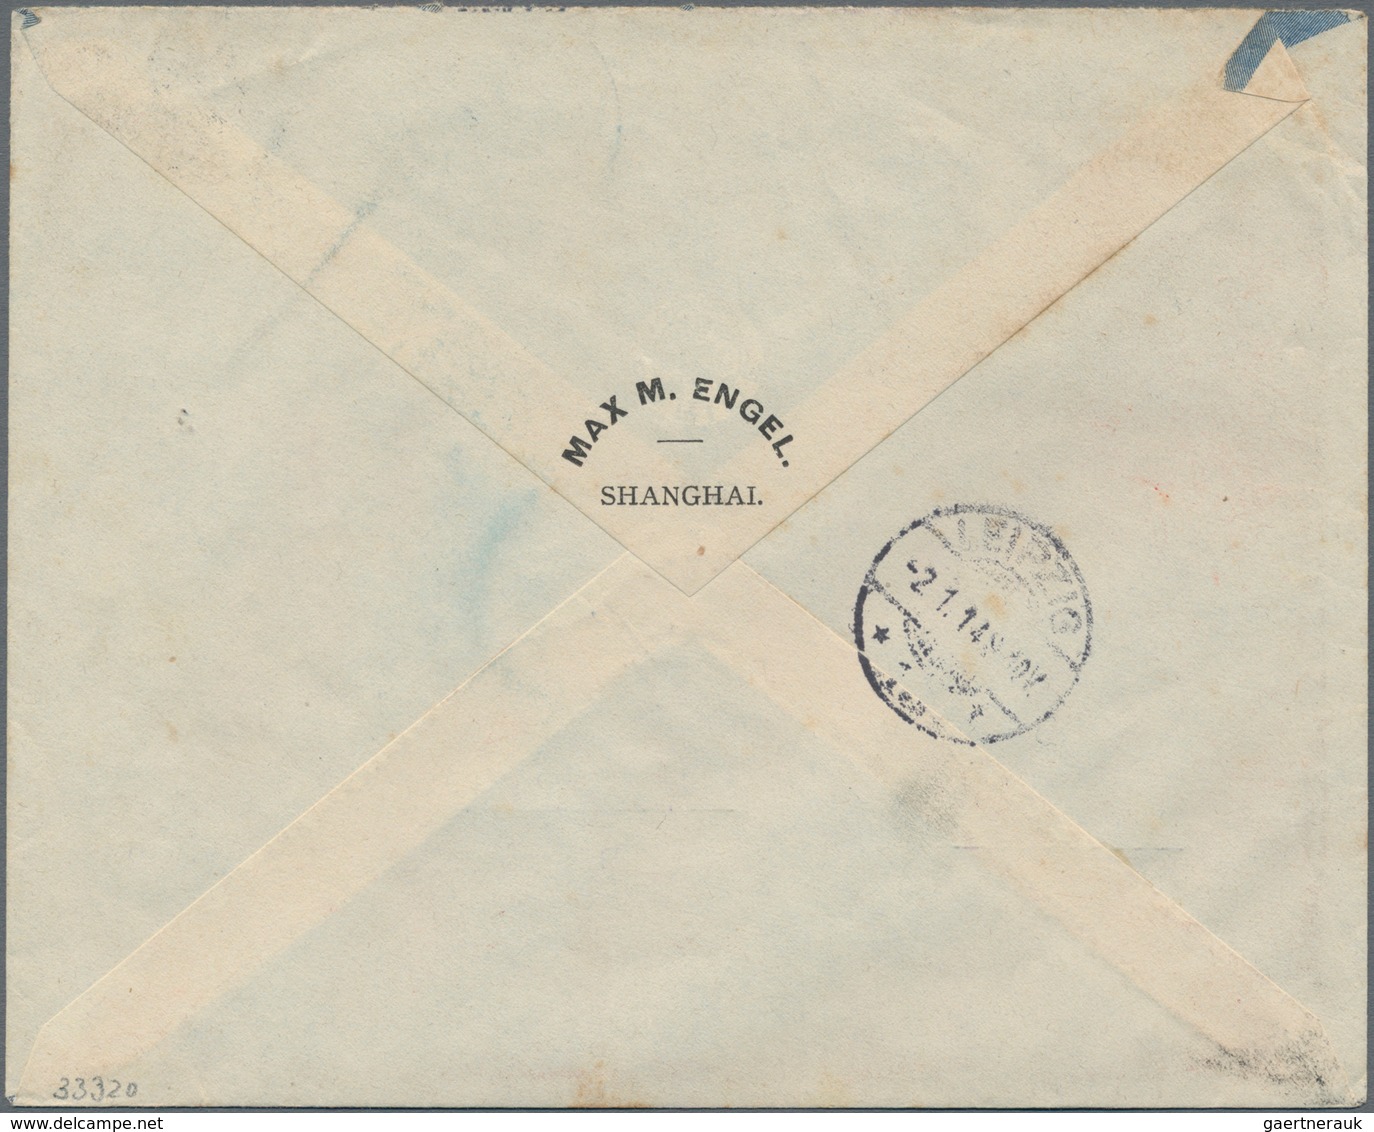 Deutsche Post In China: 1914 Einschreibebrief Von Shanghai An Die Elektrizitäts- Gesellschaft Sirius - Deutsche Post In China